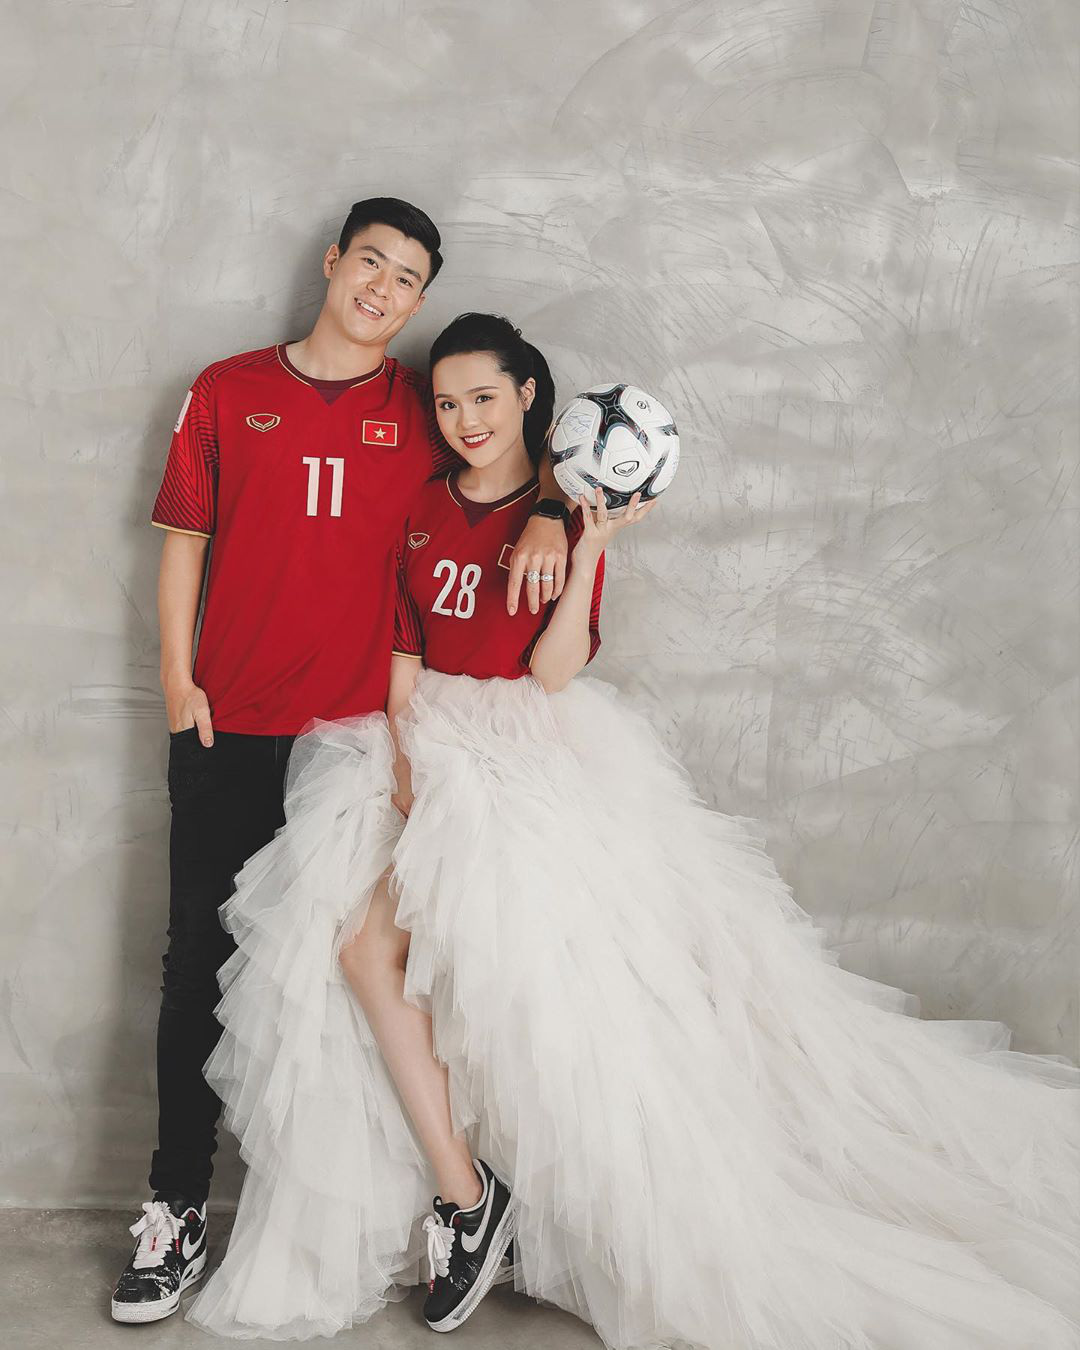 Duy Mạnh – Quỳnh Anh khoe ảnh cưới ngọt ngào nhưng netizen chỉ săm soi giày đôi GD hoa cúc đã tróc vẩy cực chất - Ảnh 1.